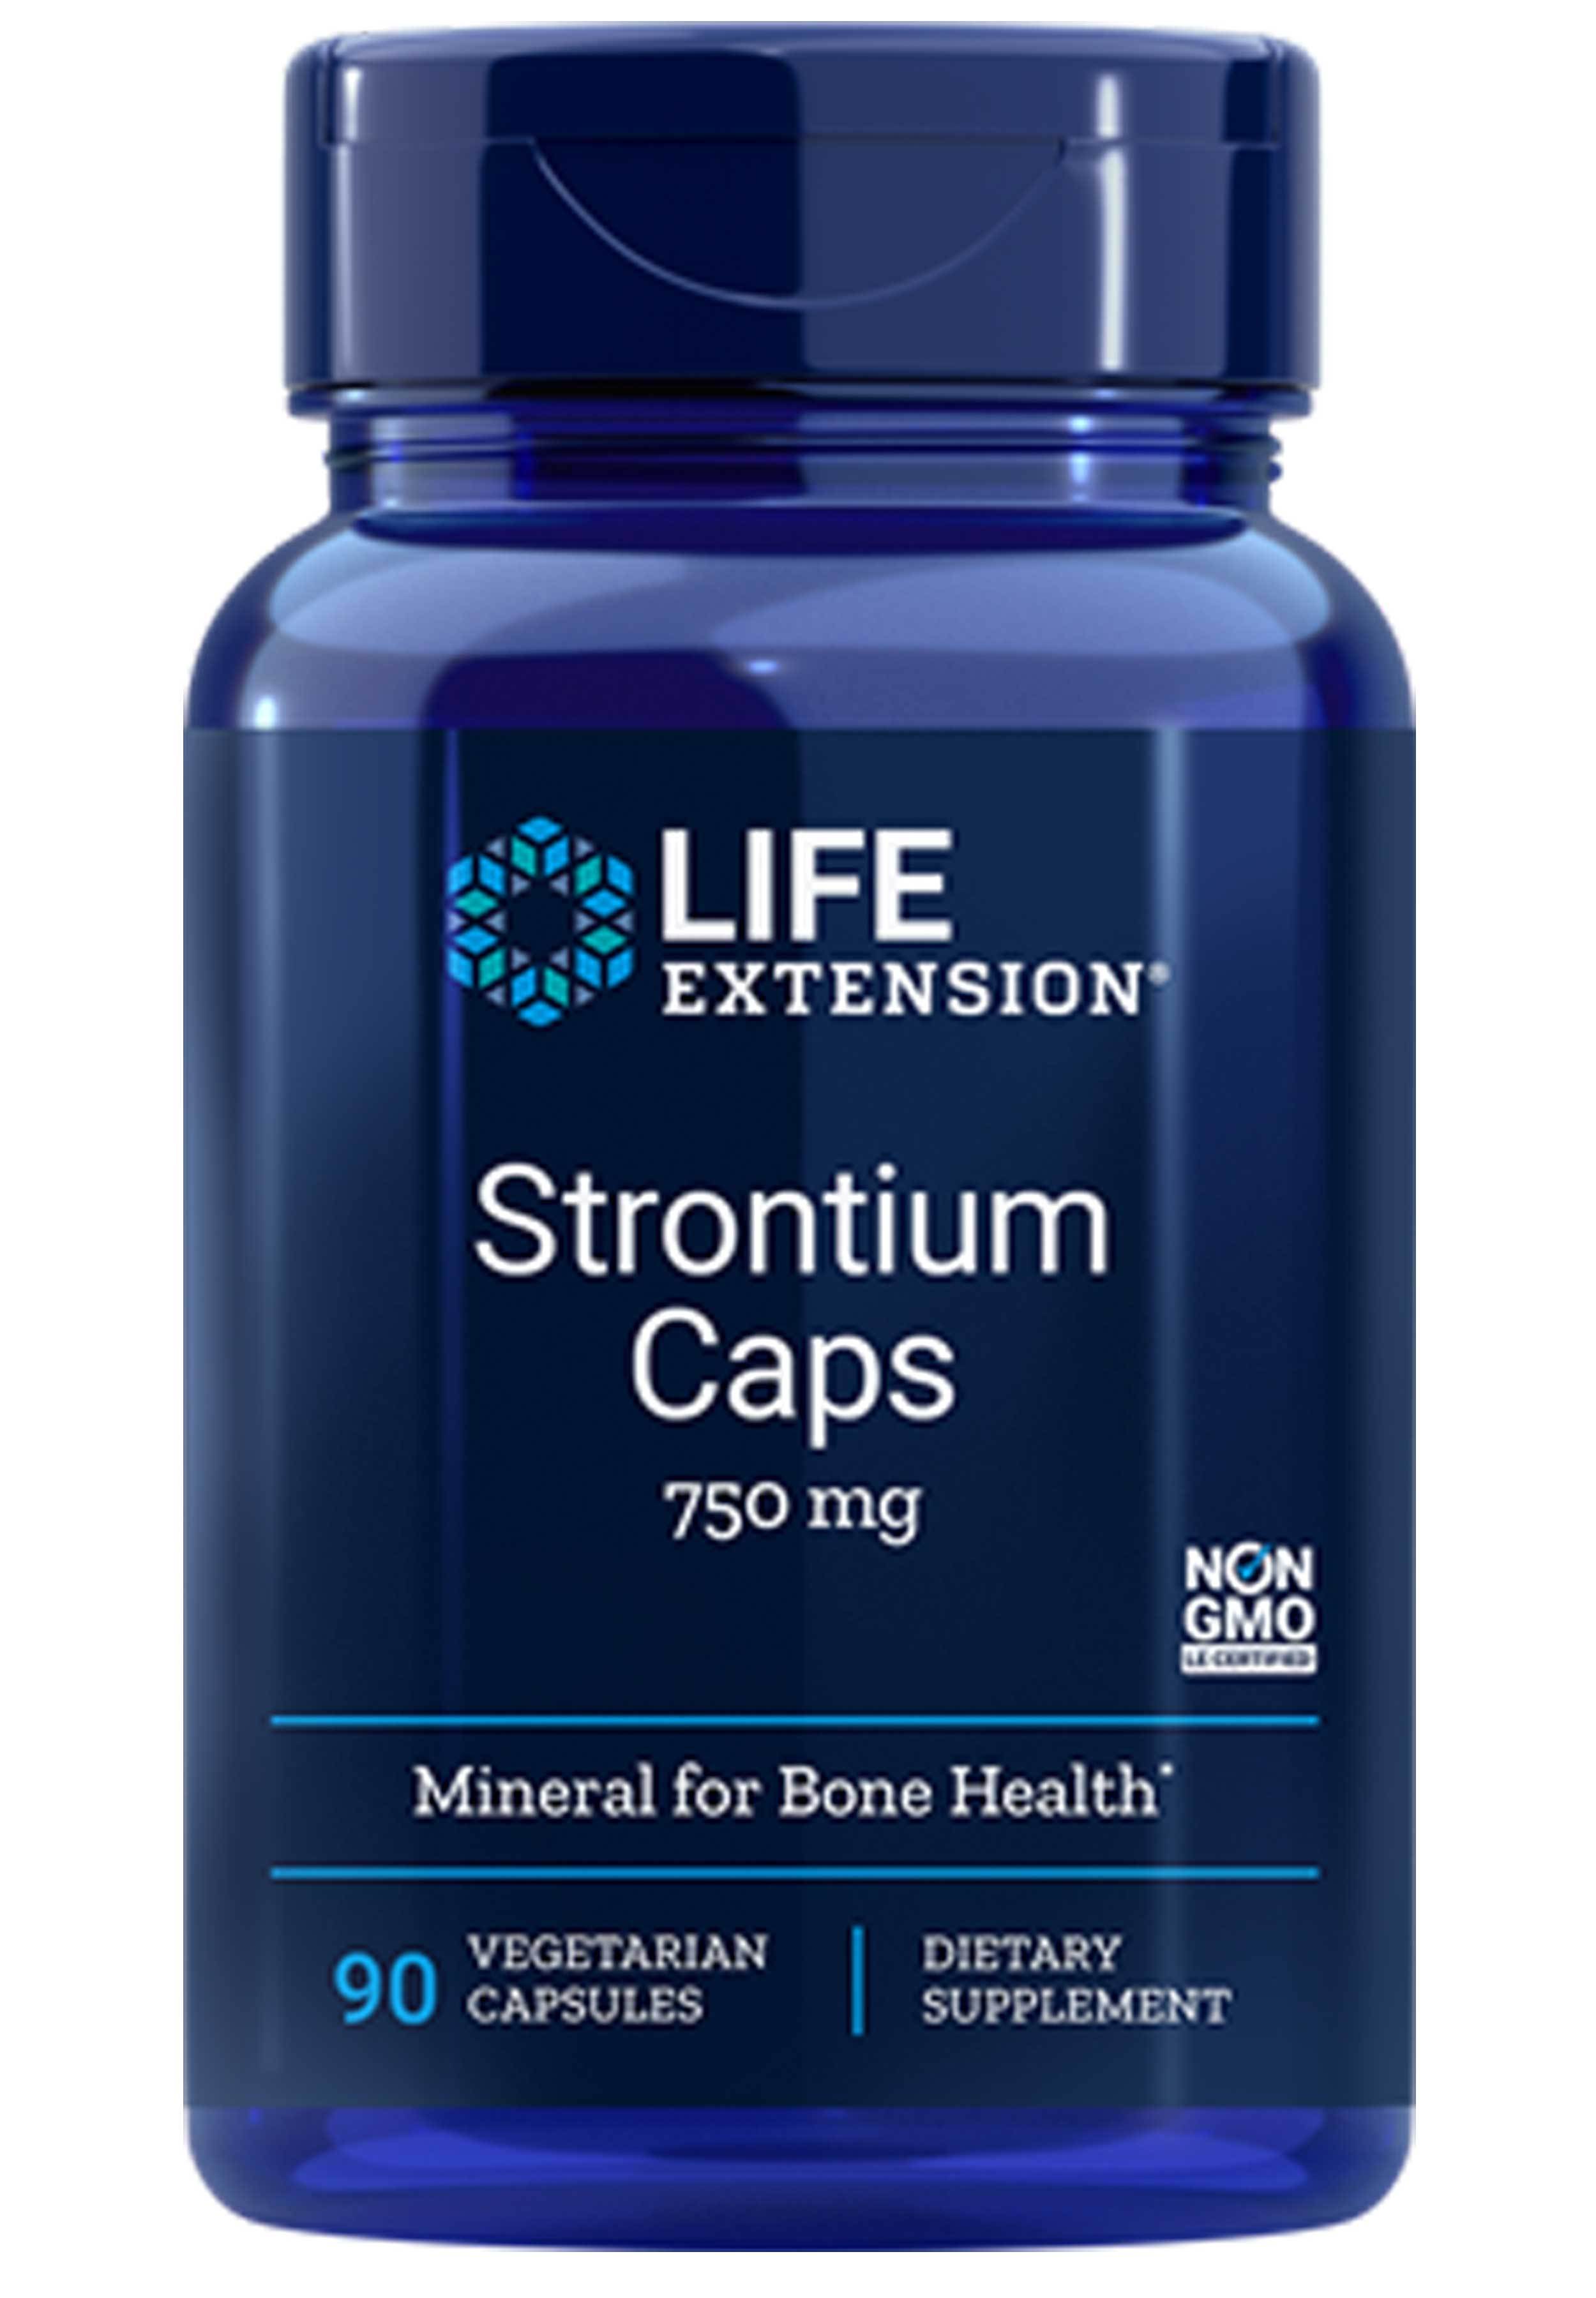 Life Extension Strontium Caps